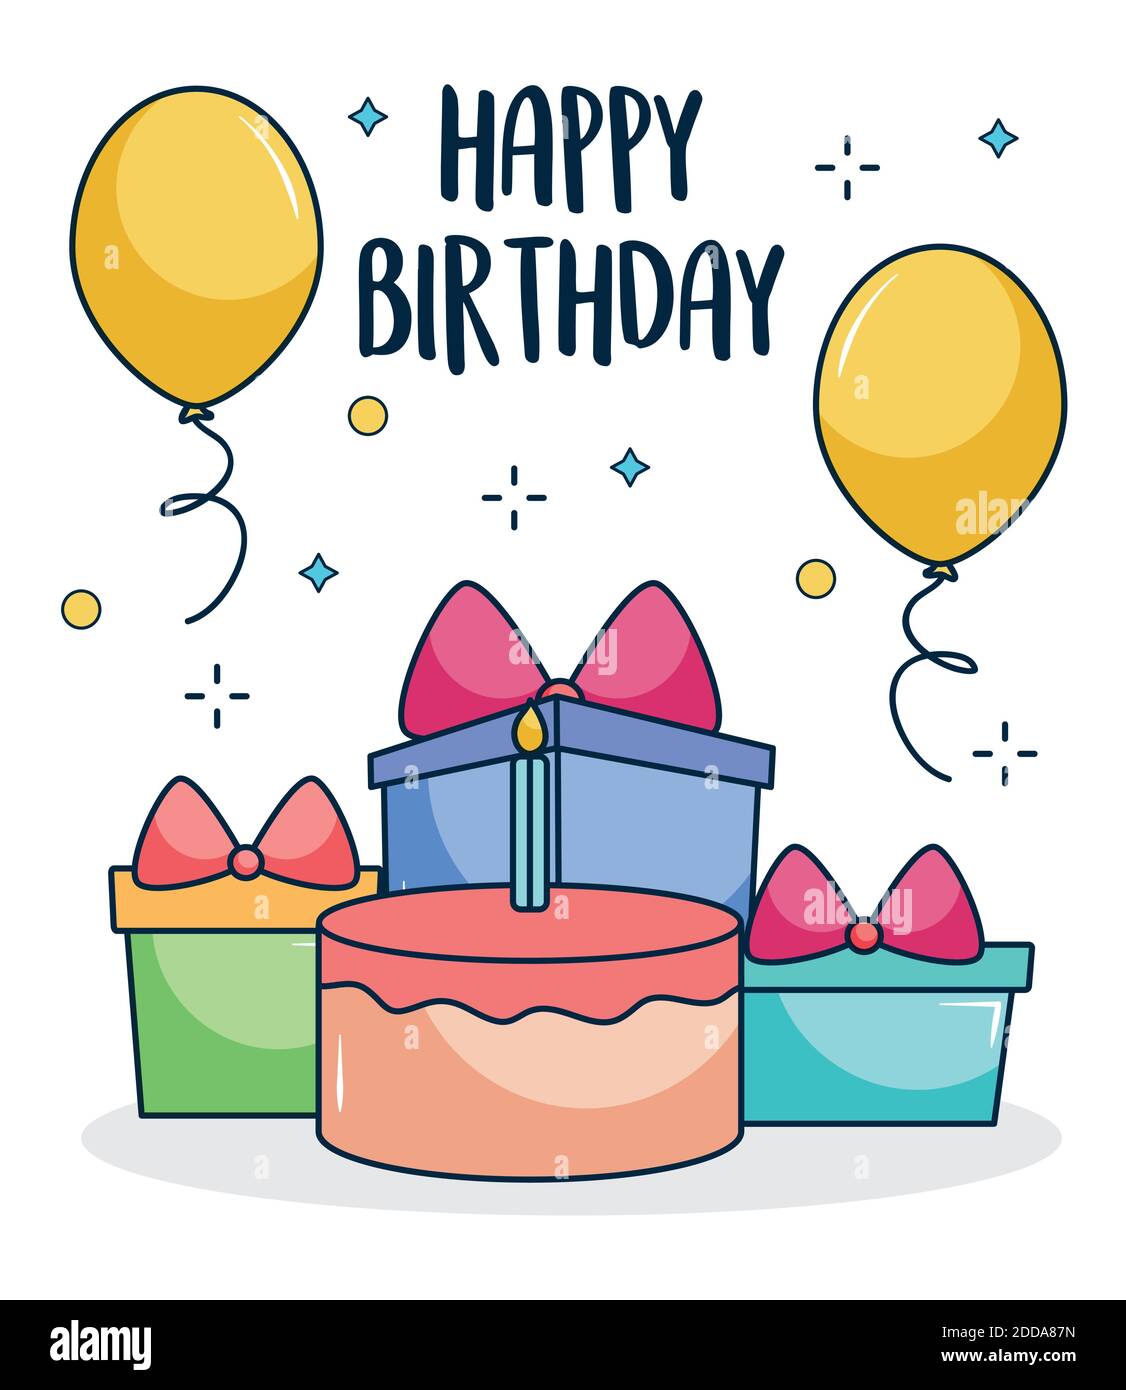 carta regalo di buon compleanno torta isolata con gelato vettoriale 6439694  Arte vettoriale a Vecteezy